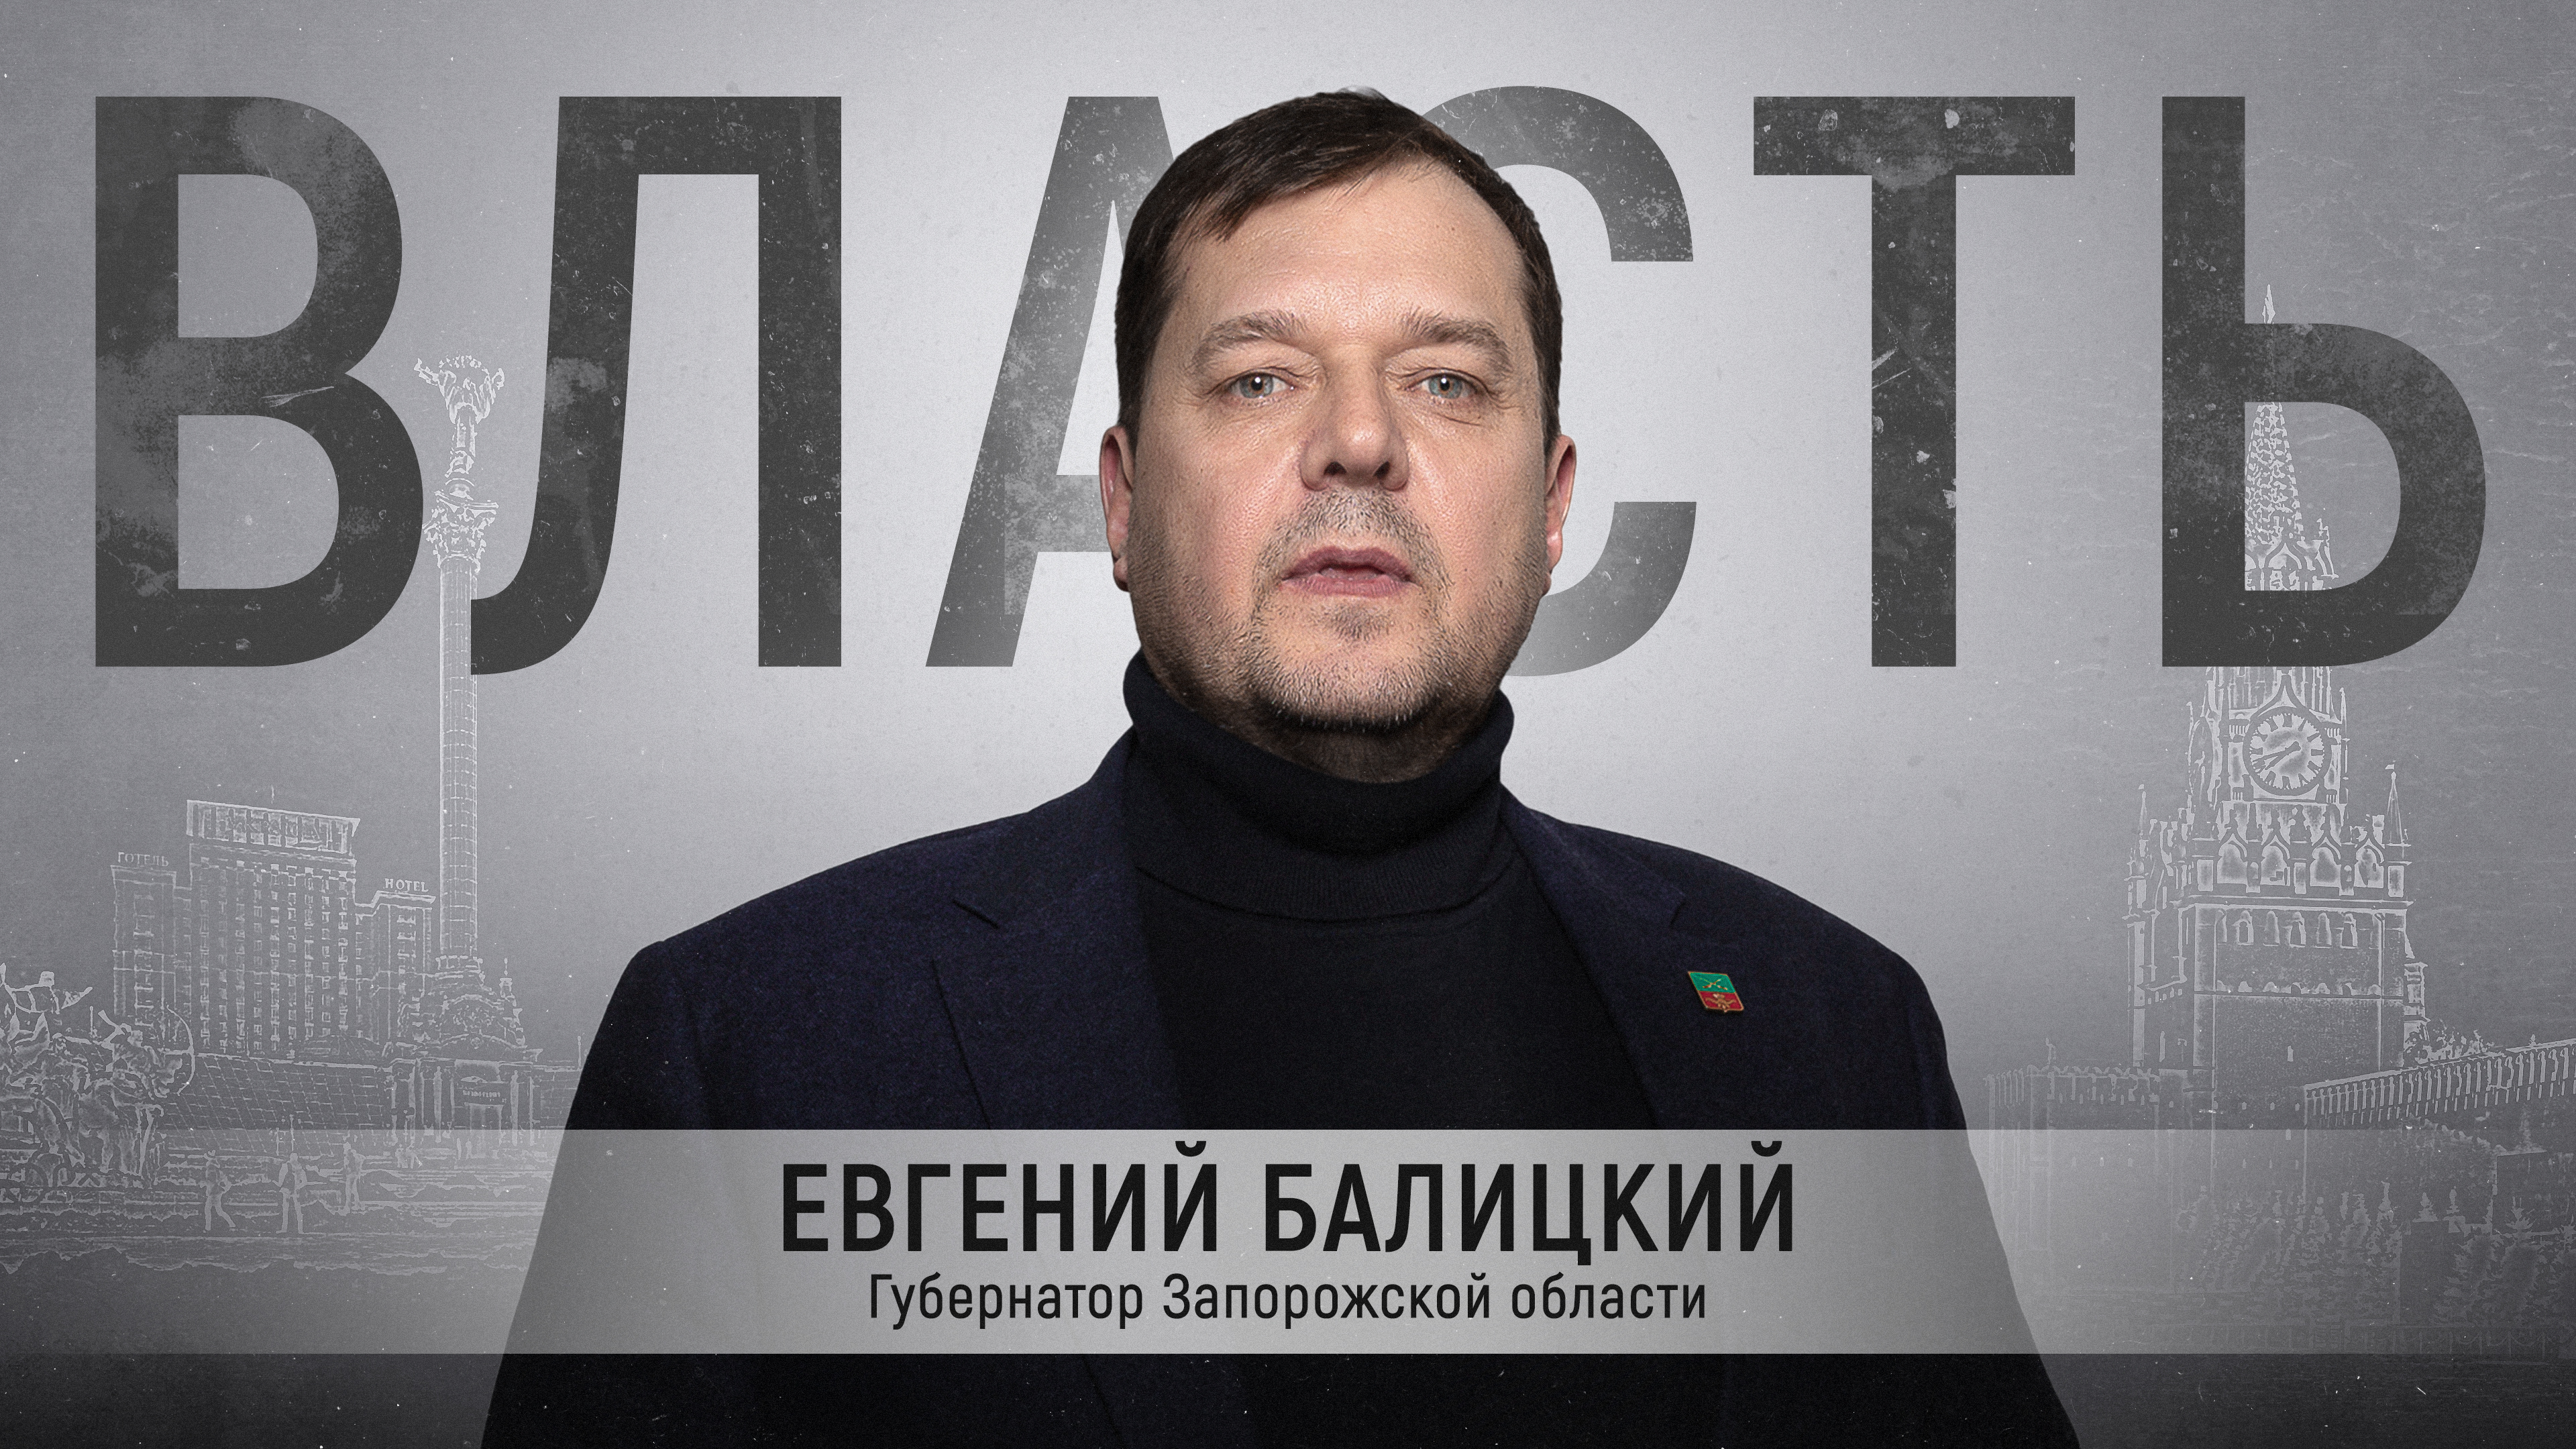 Евгений Балицкий в интервью о себе, разнице политики в Украине и России и о шоу Зеленского на посту